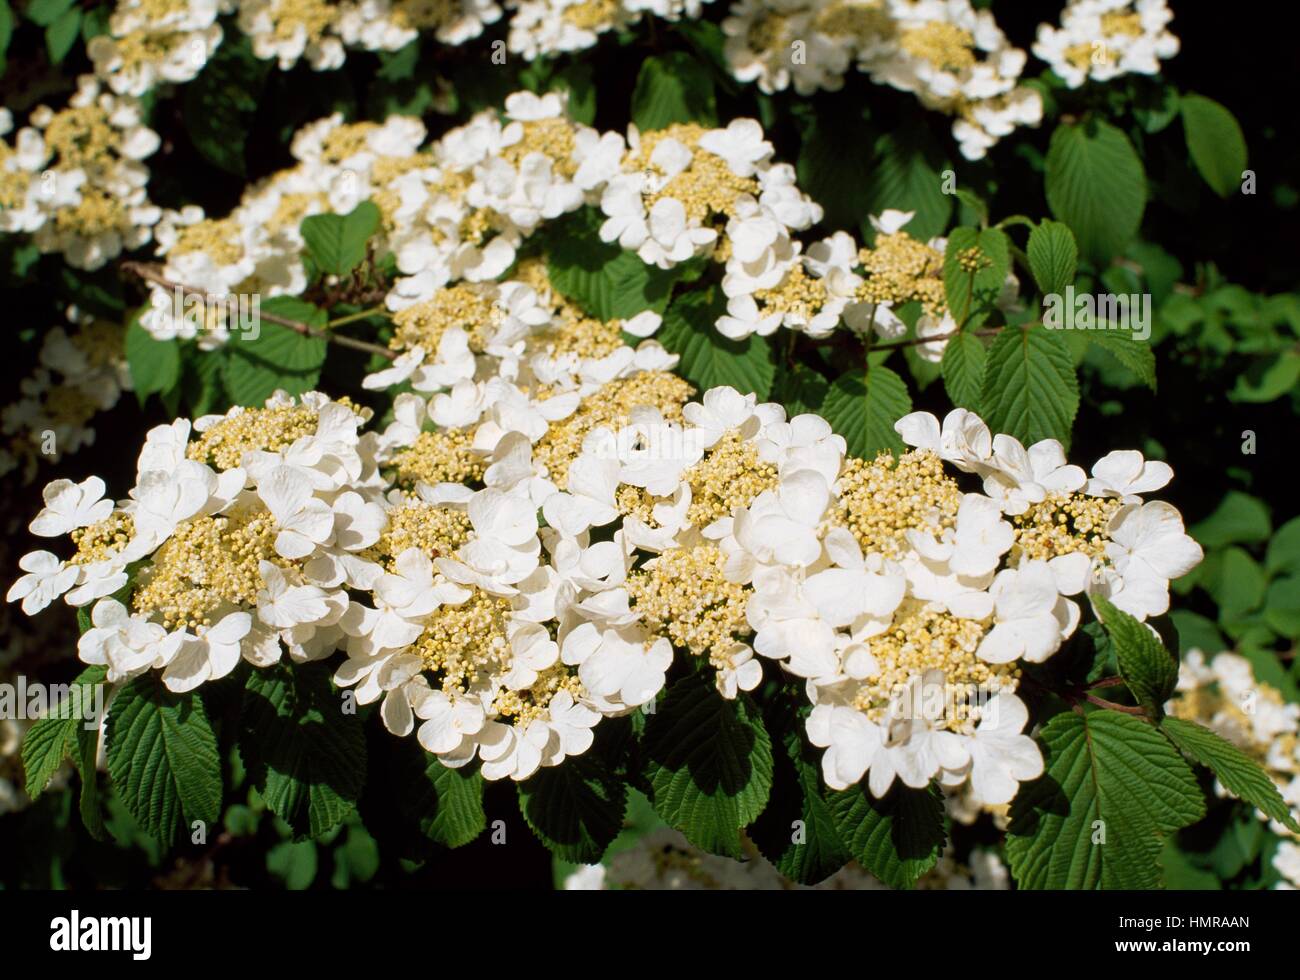 Doublefile Viburnum (Viburnum plicatum tomentosum Mariesii), Adoxaceae. Stock Photo